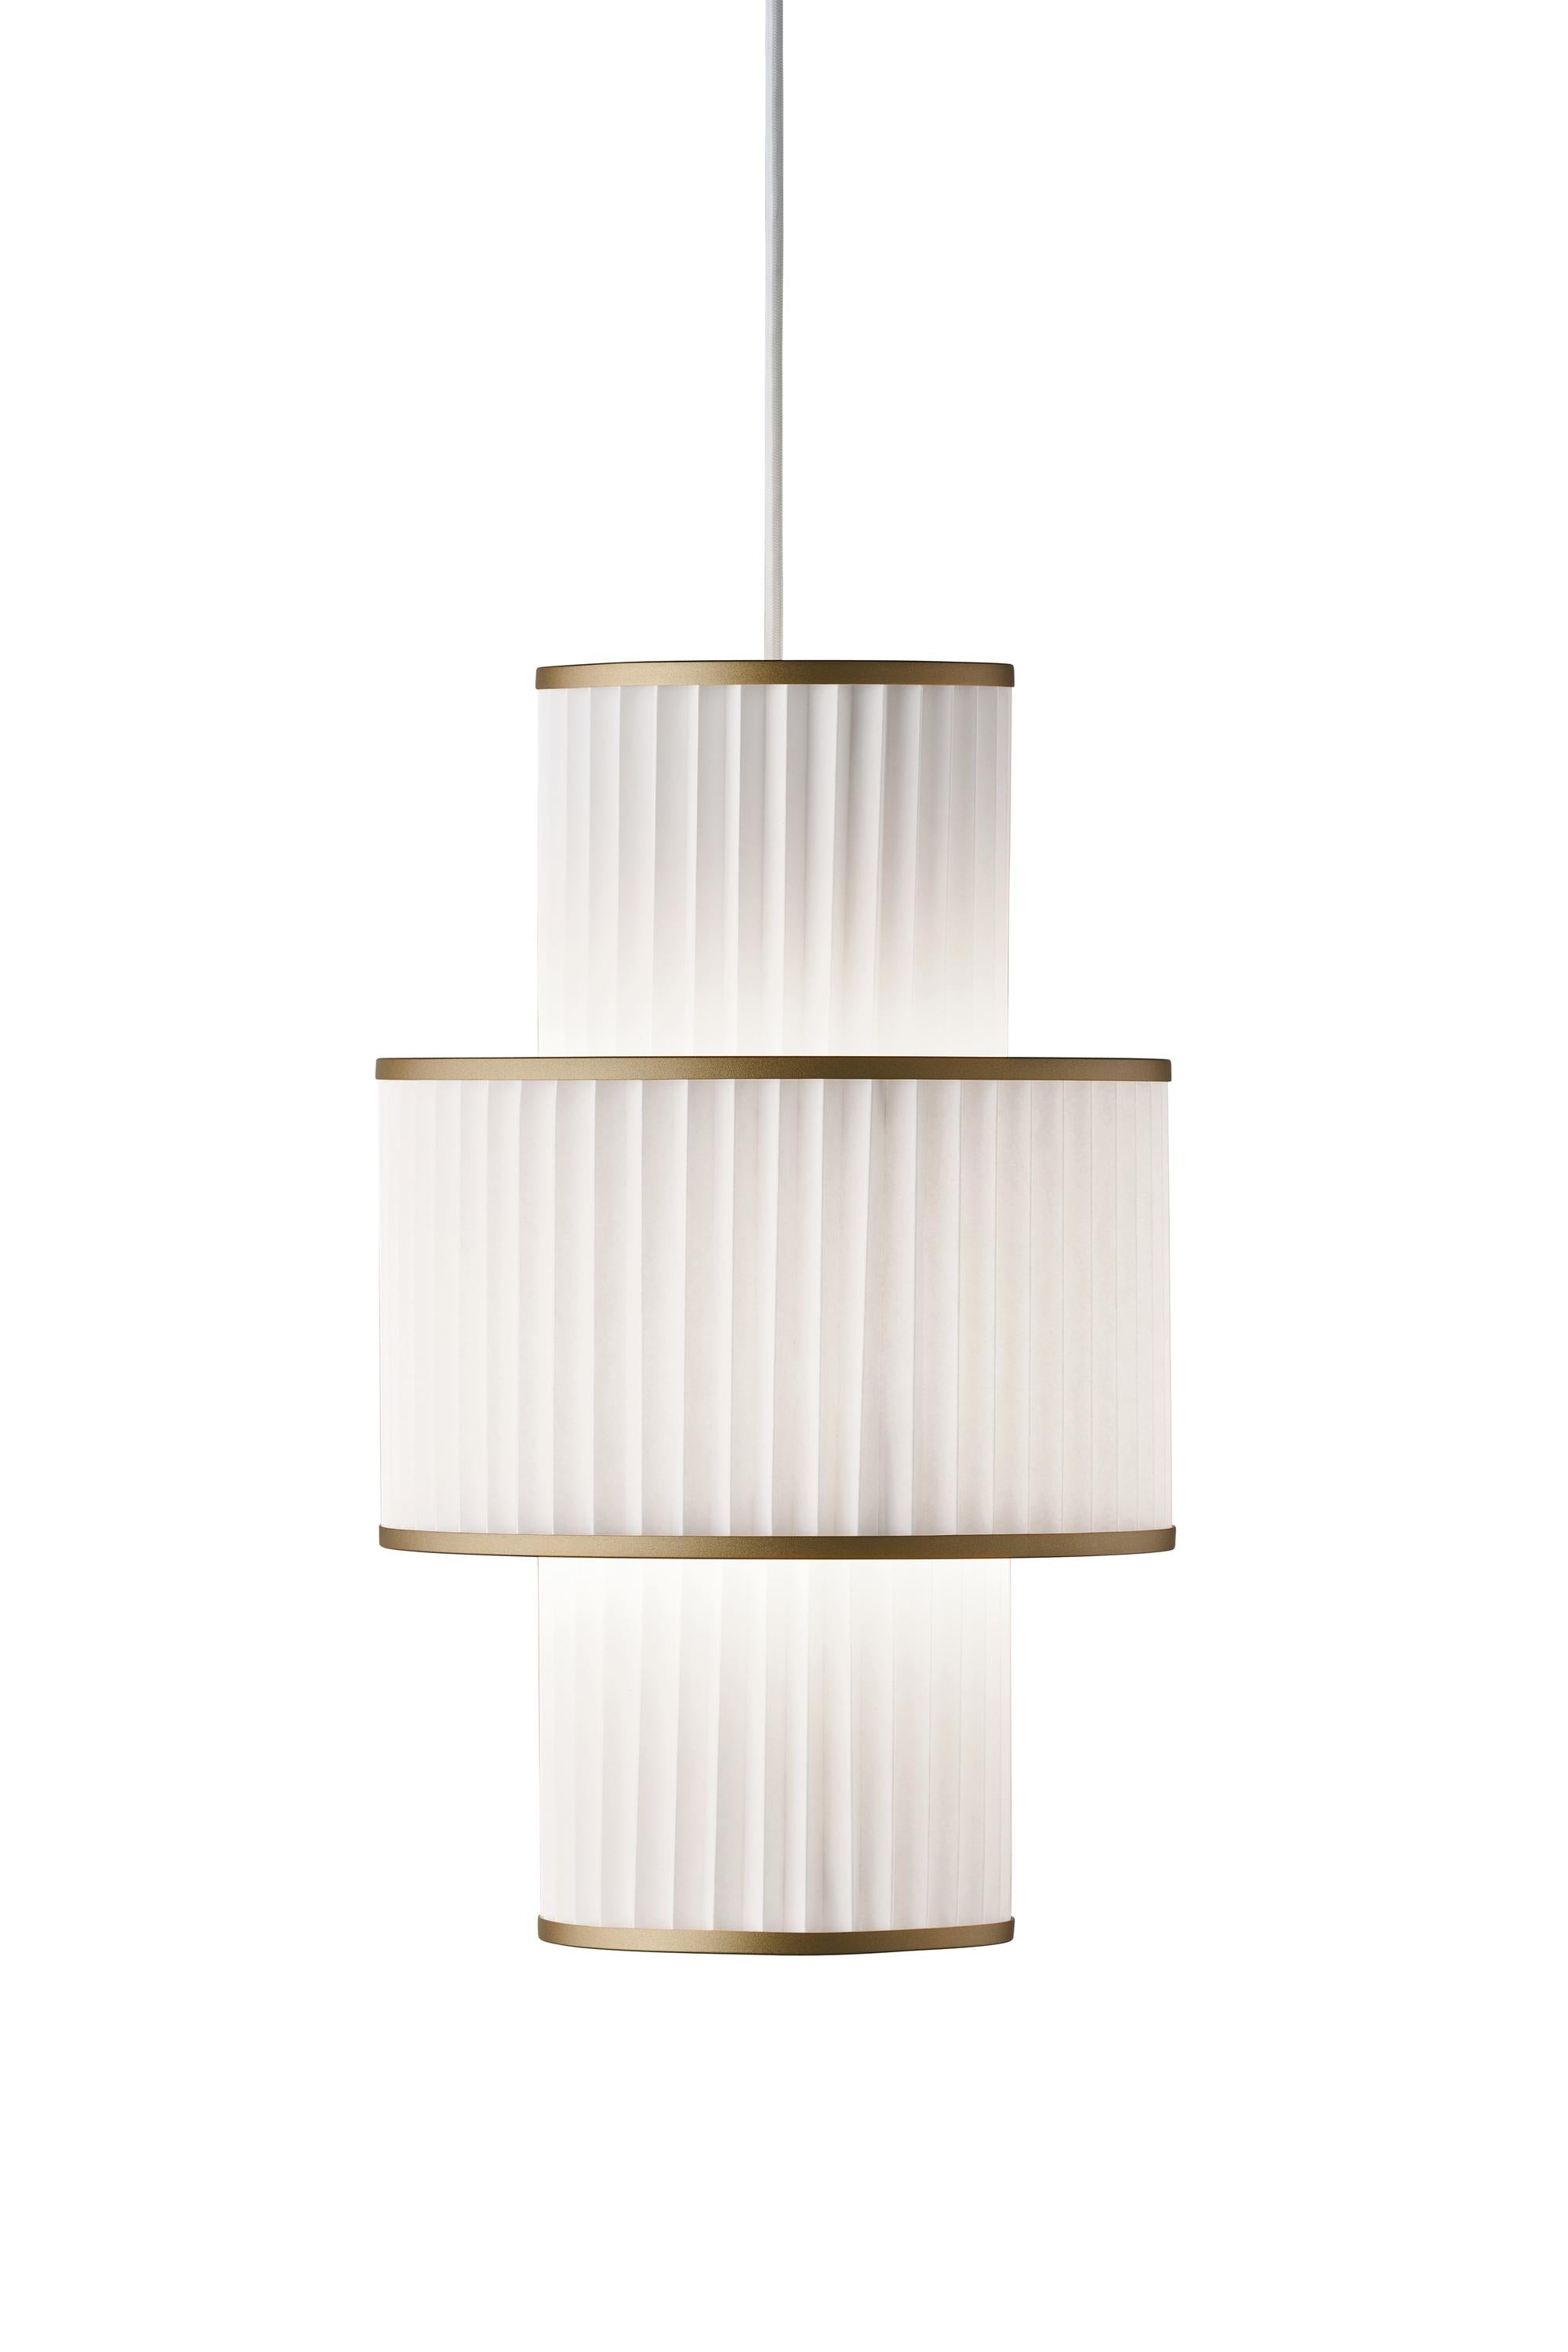 Le Klint Plivello Suspensionslampe Golden/Weiß mit 3 Farbtönen (S m s)